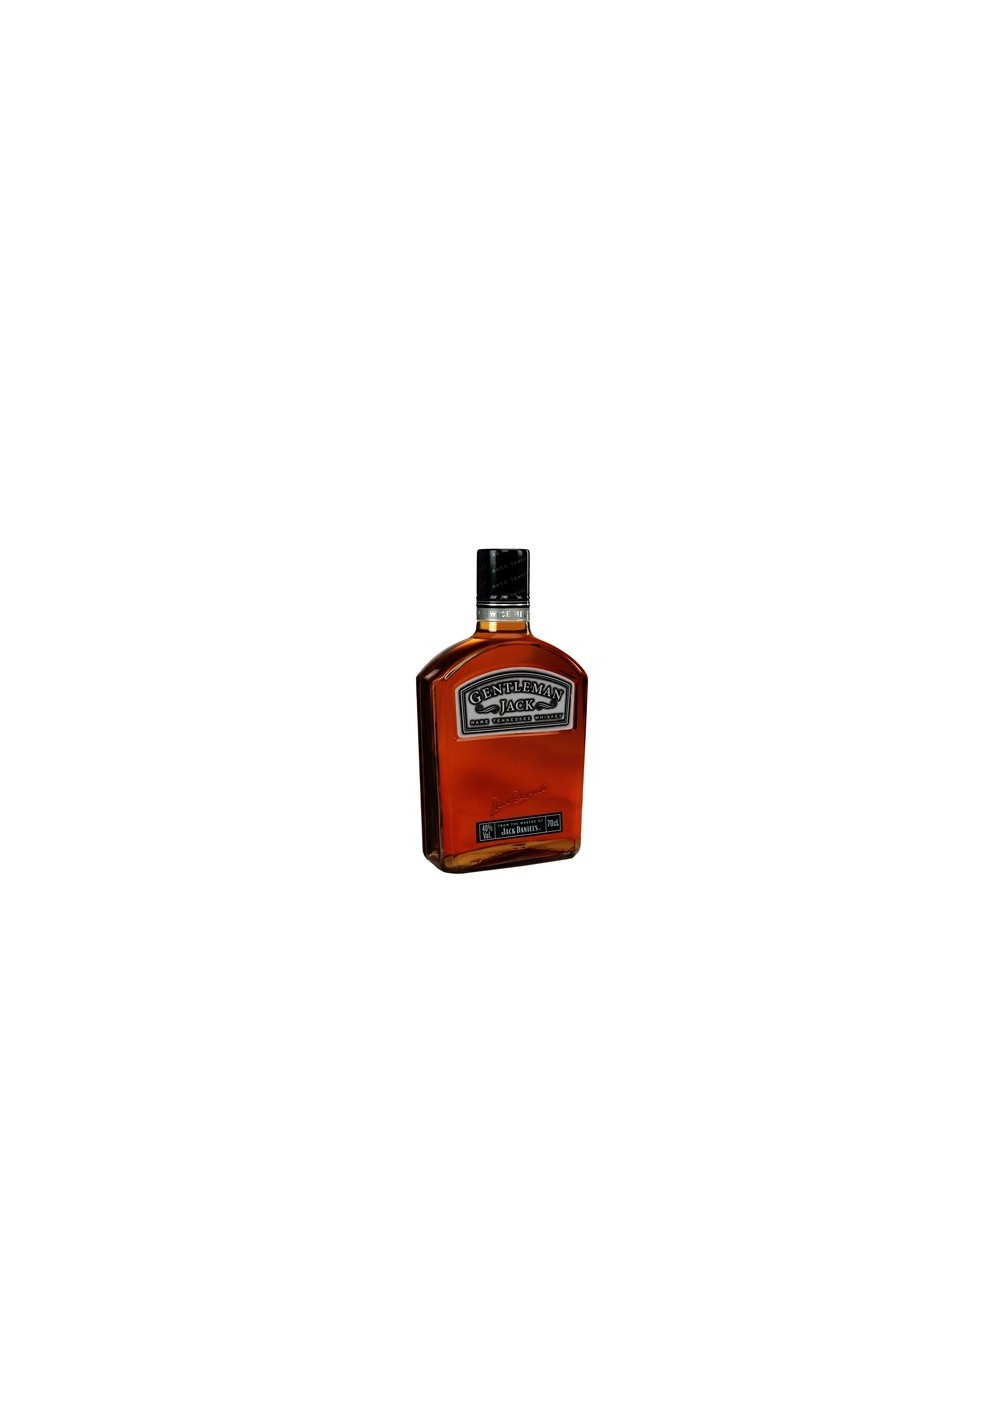 Jack Daniels Gentleman Tennessee Whisky 